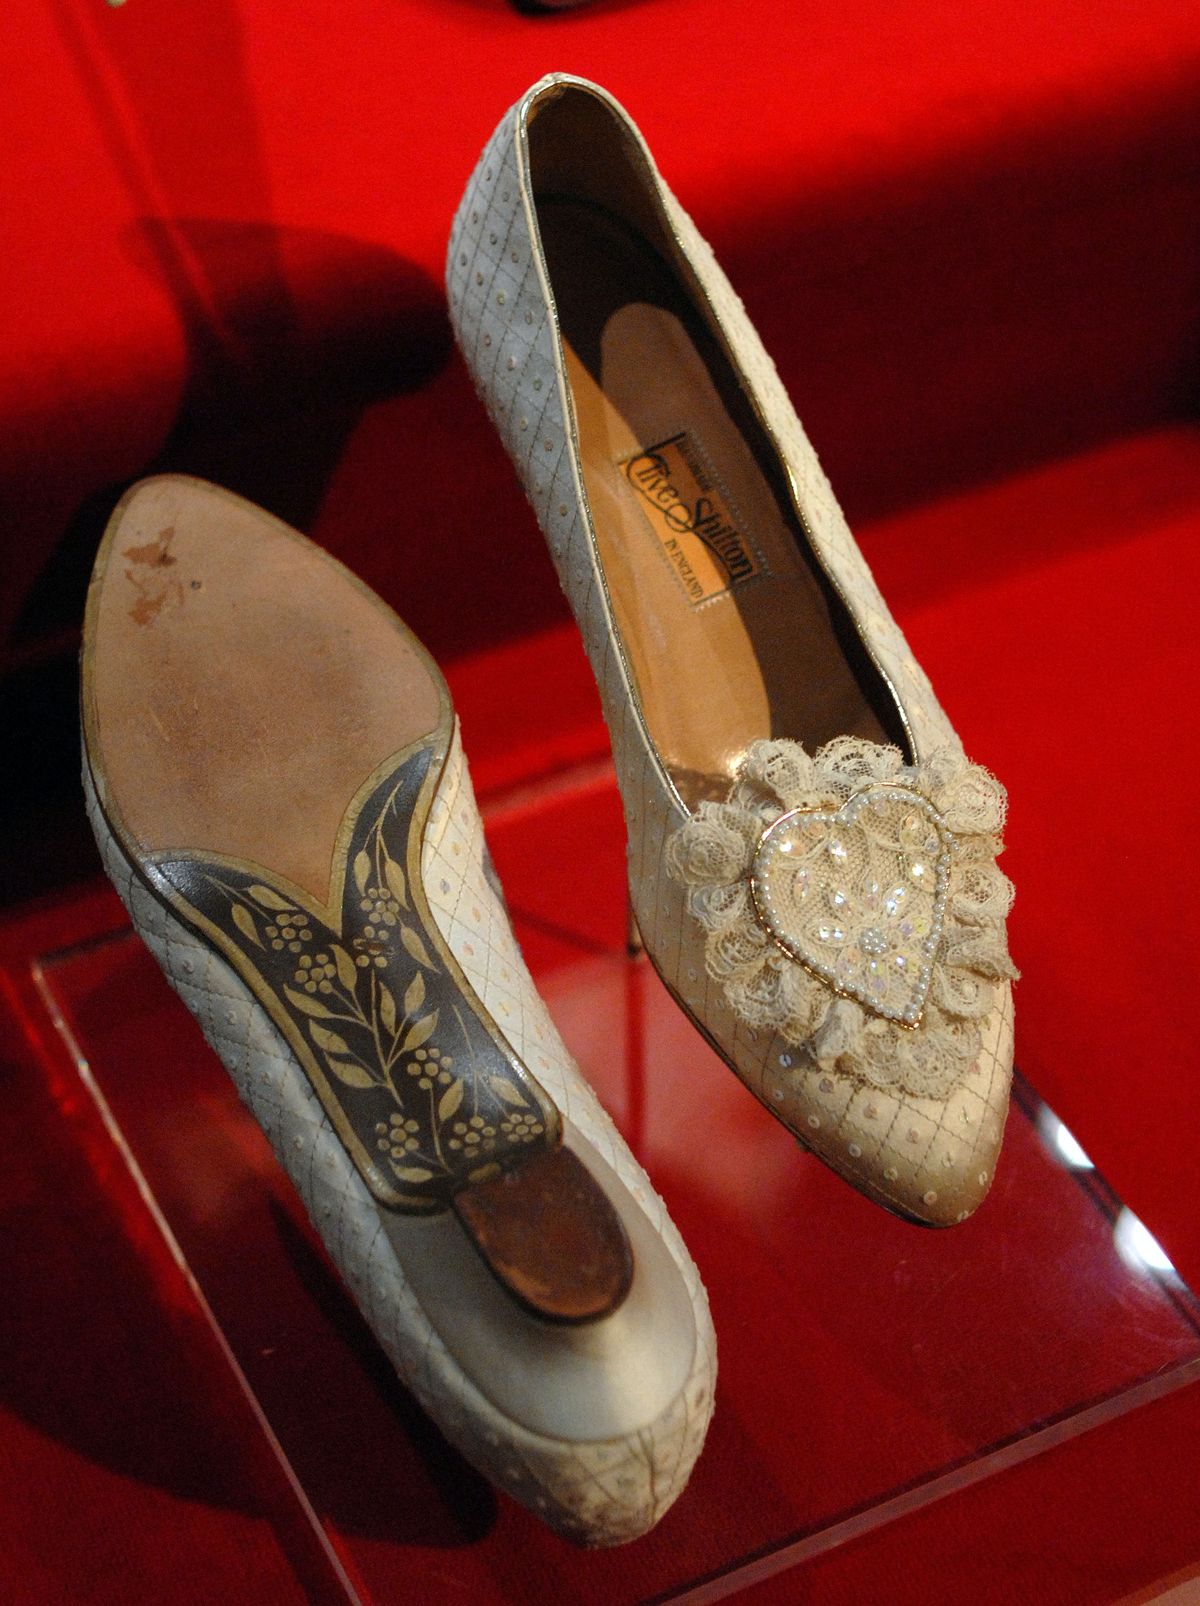 Η πριγκίπισσα Νταϊάνα προστέθηκε στα γαμήλια παπούτσια της την πιο γλυκιά μυστική γκραβούρα